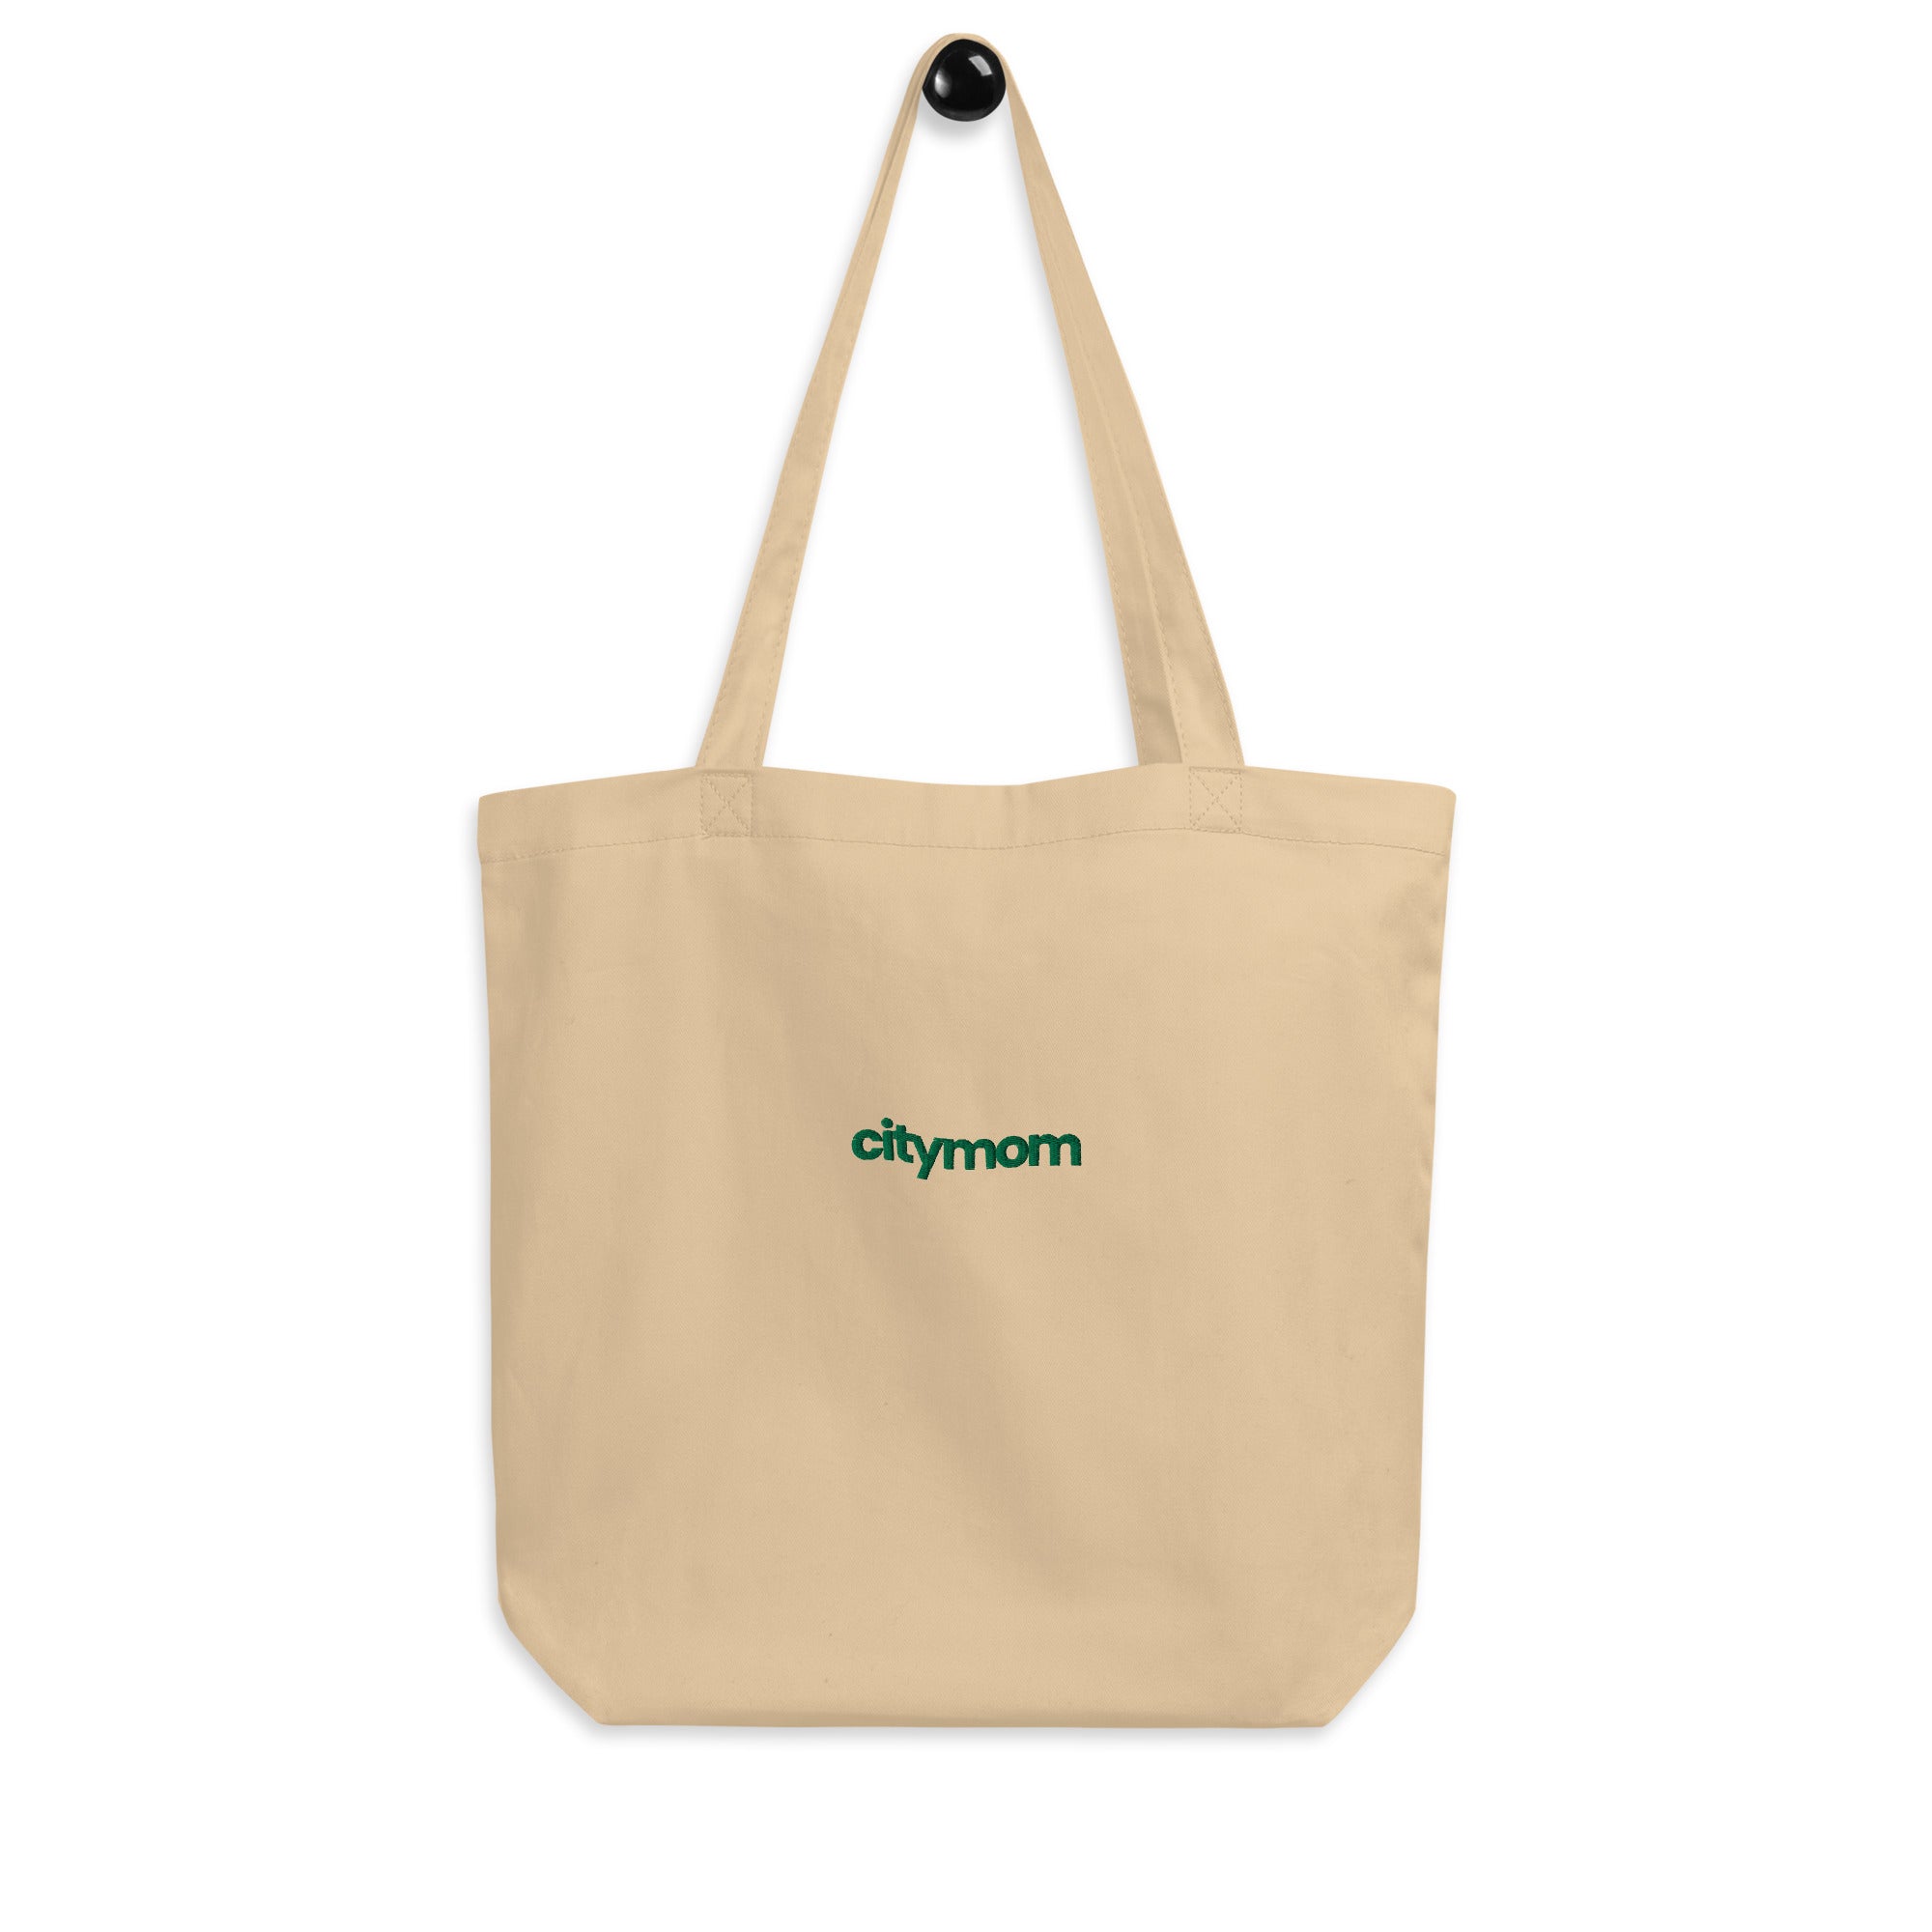 citymom - Eco Tote Bag